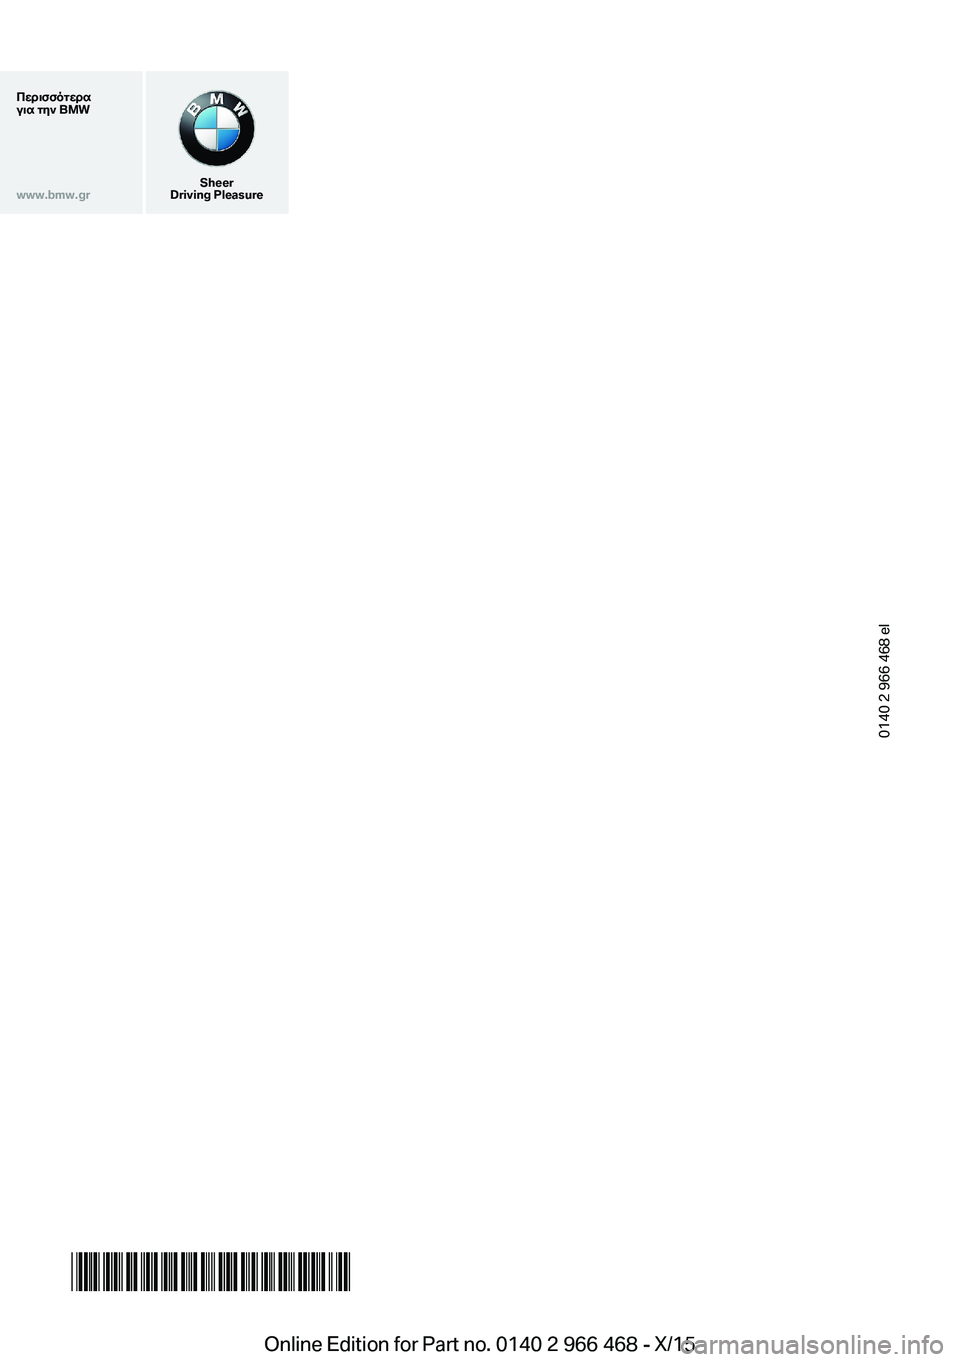 BMW 7 SERIES 2016  ΟΔΗΓΌΣ ΧΡΉΣΗΣ (in Greek) Περισσότερα
για την BMWwww.bmw.gr
Sheer
Driving Pleasure
0140 2 966 468 el
*BL296646800R*Online Edition for Part no. 0140 2 966 468 - X/15  